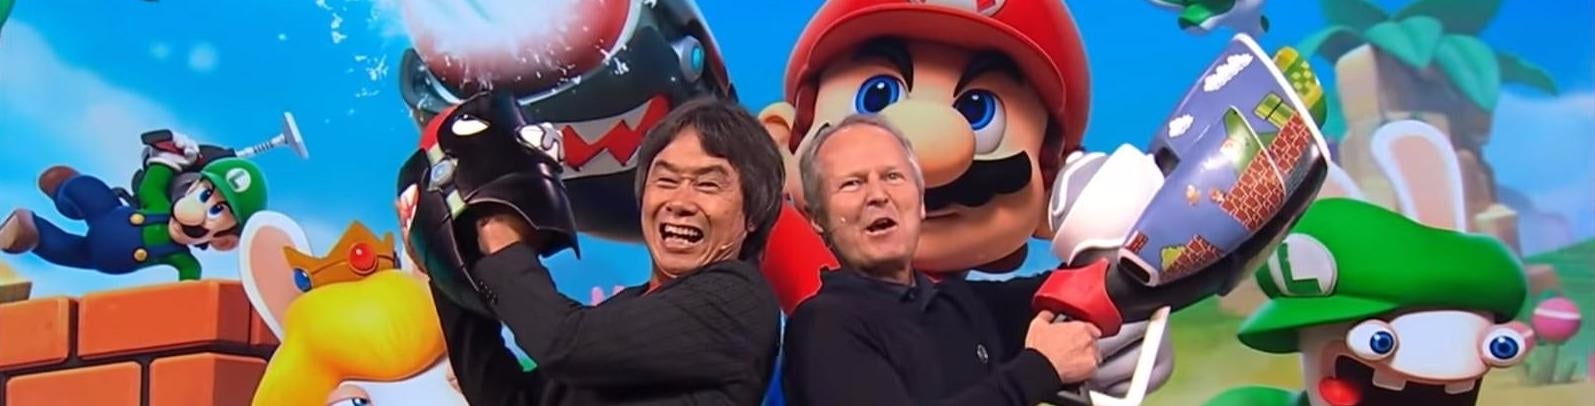 Immagine di E3 2017: quattro chiacchiere con Shigeru Miyamoto e Yves Guillemot - intervista